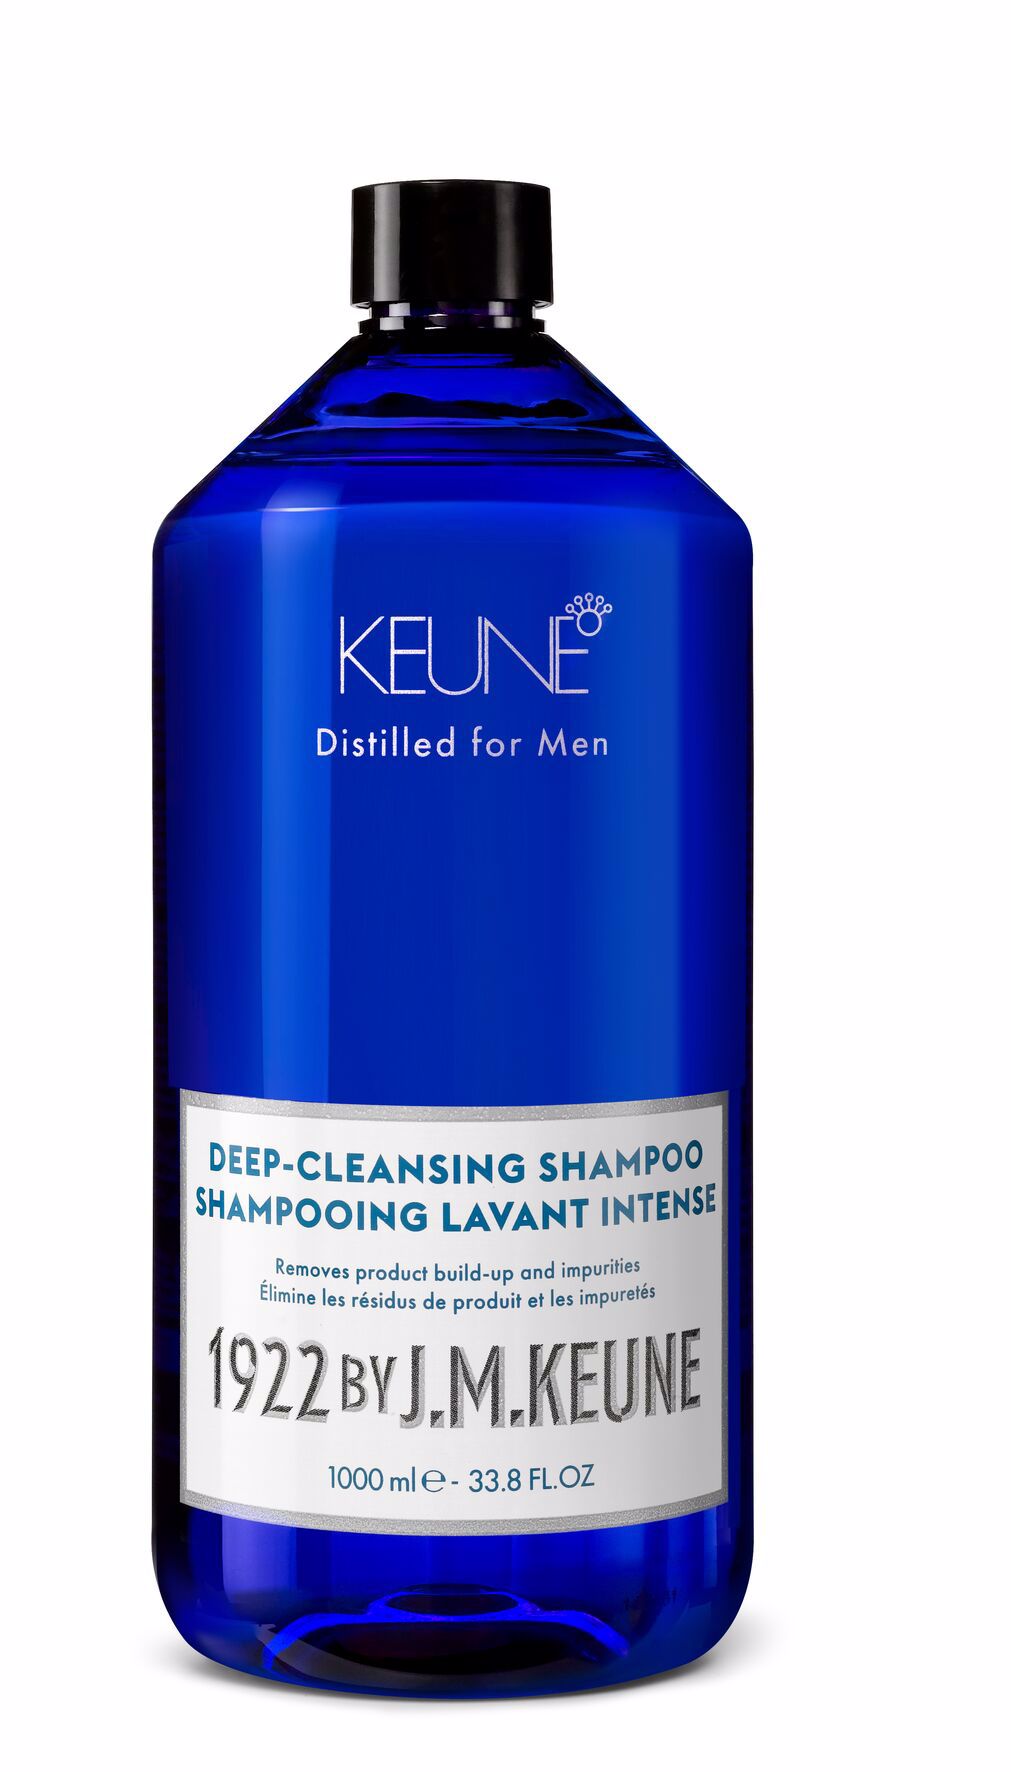 Das Deep-Cleansing Shampoo für Männer reinigt intensiv und spendet Feuchtigkeit. Kreatin und Bambusextrakt stärken, ideal bei fettigem Haar. Auf Keune.ch.